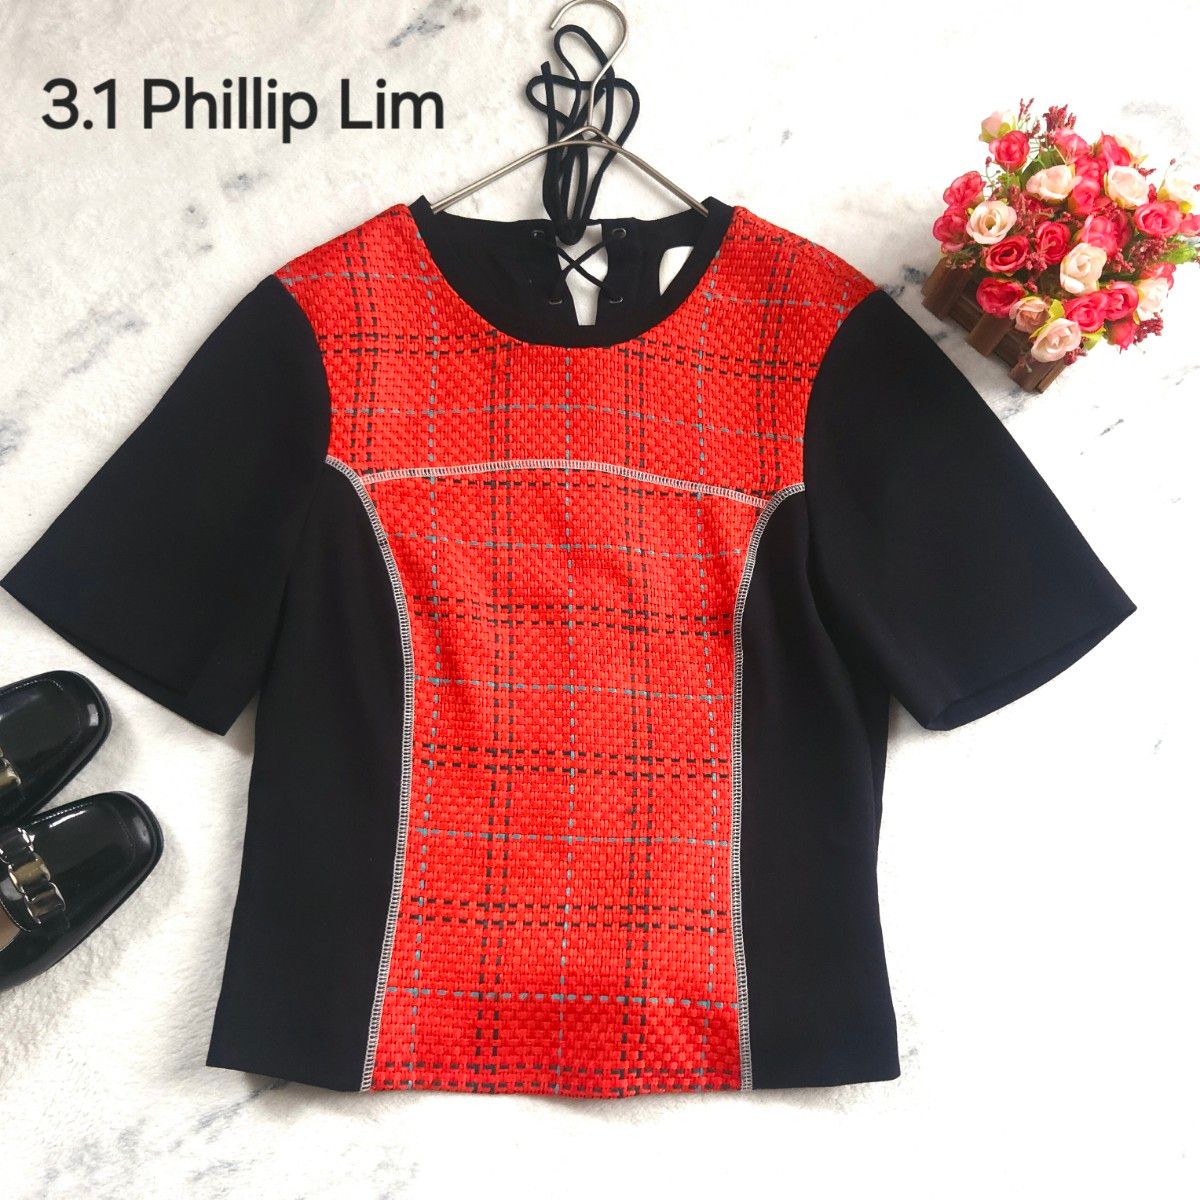 スリーワンフィリップリム 3.1 Phillip Lim ツイード切替 半袖ブラウス  黒 赤 Mサイズ相当 極美品